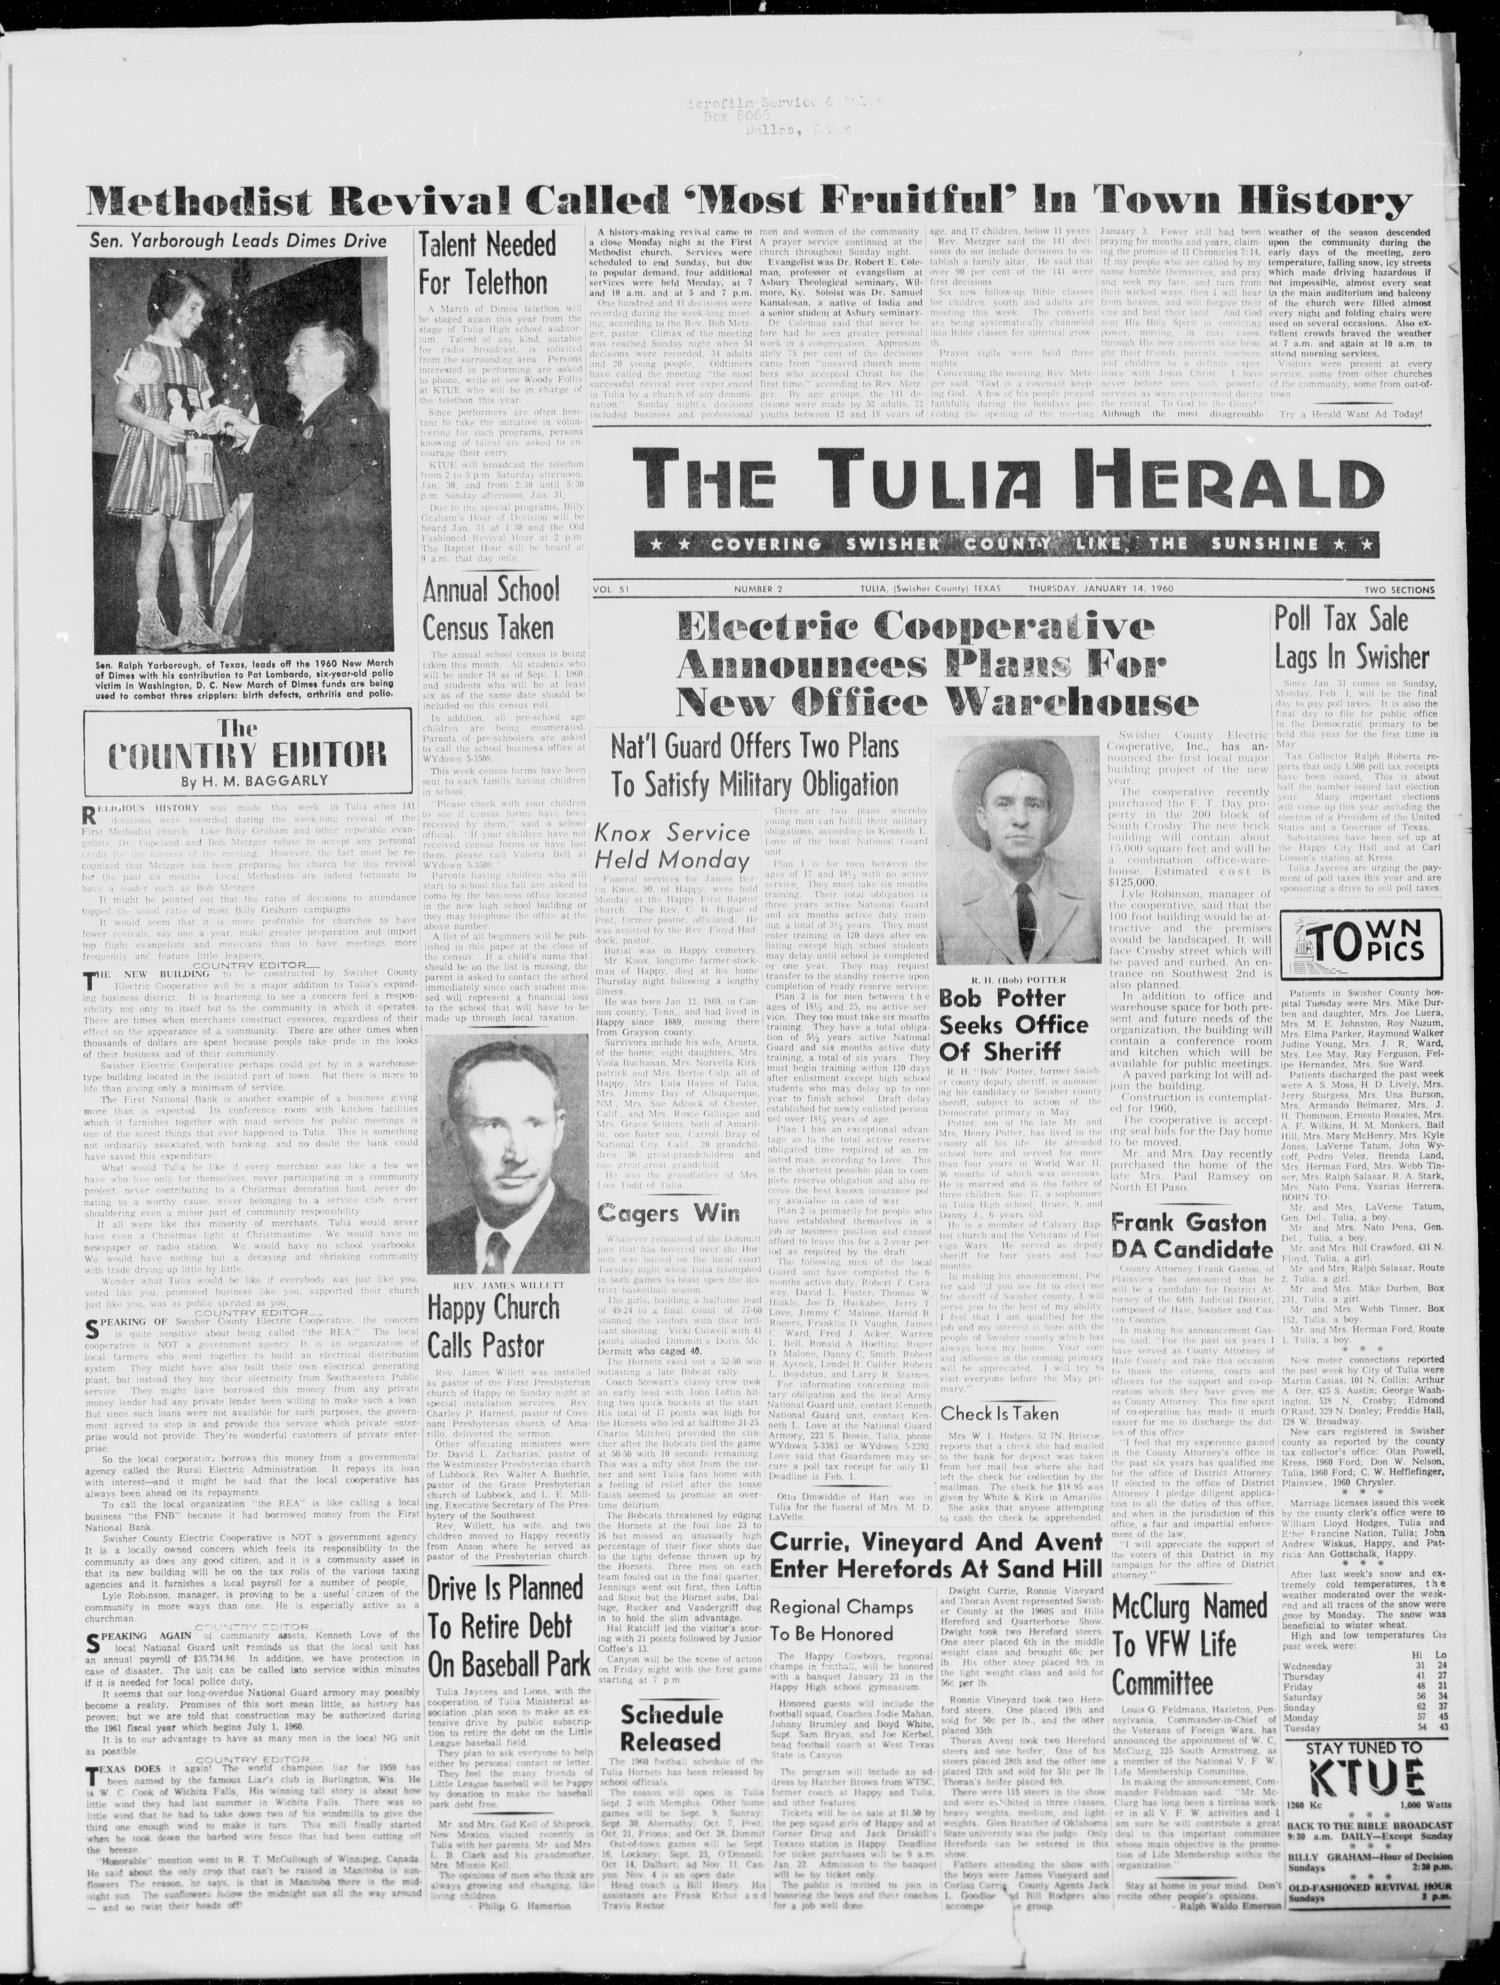 The Tulia Herald (Tulia, Tex), Vol. 51, No. 2, Ed. 1, Thursday, January 14, 1960
                                                
                                                    1
                                                